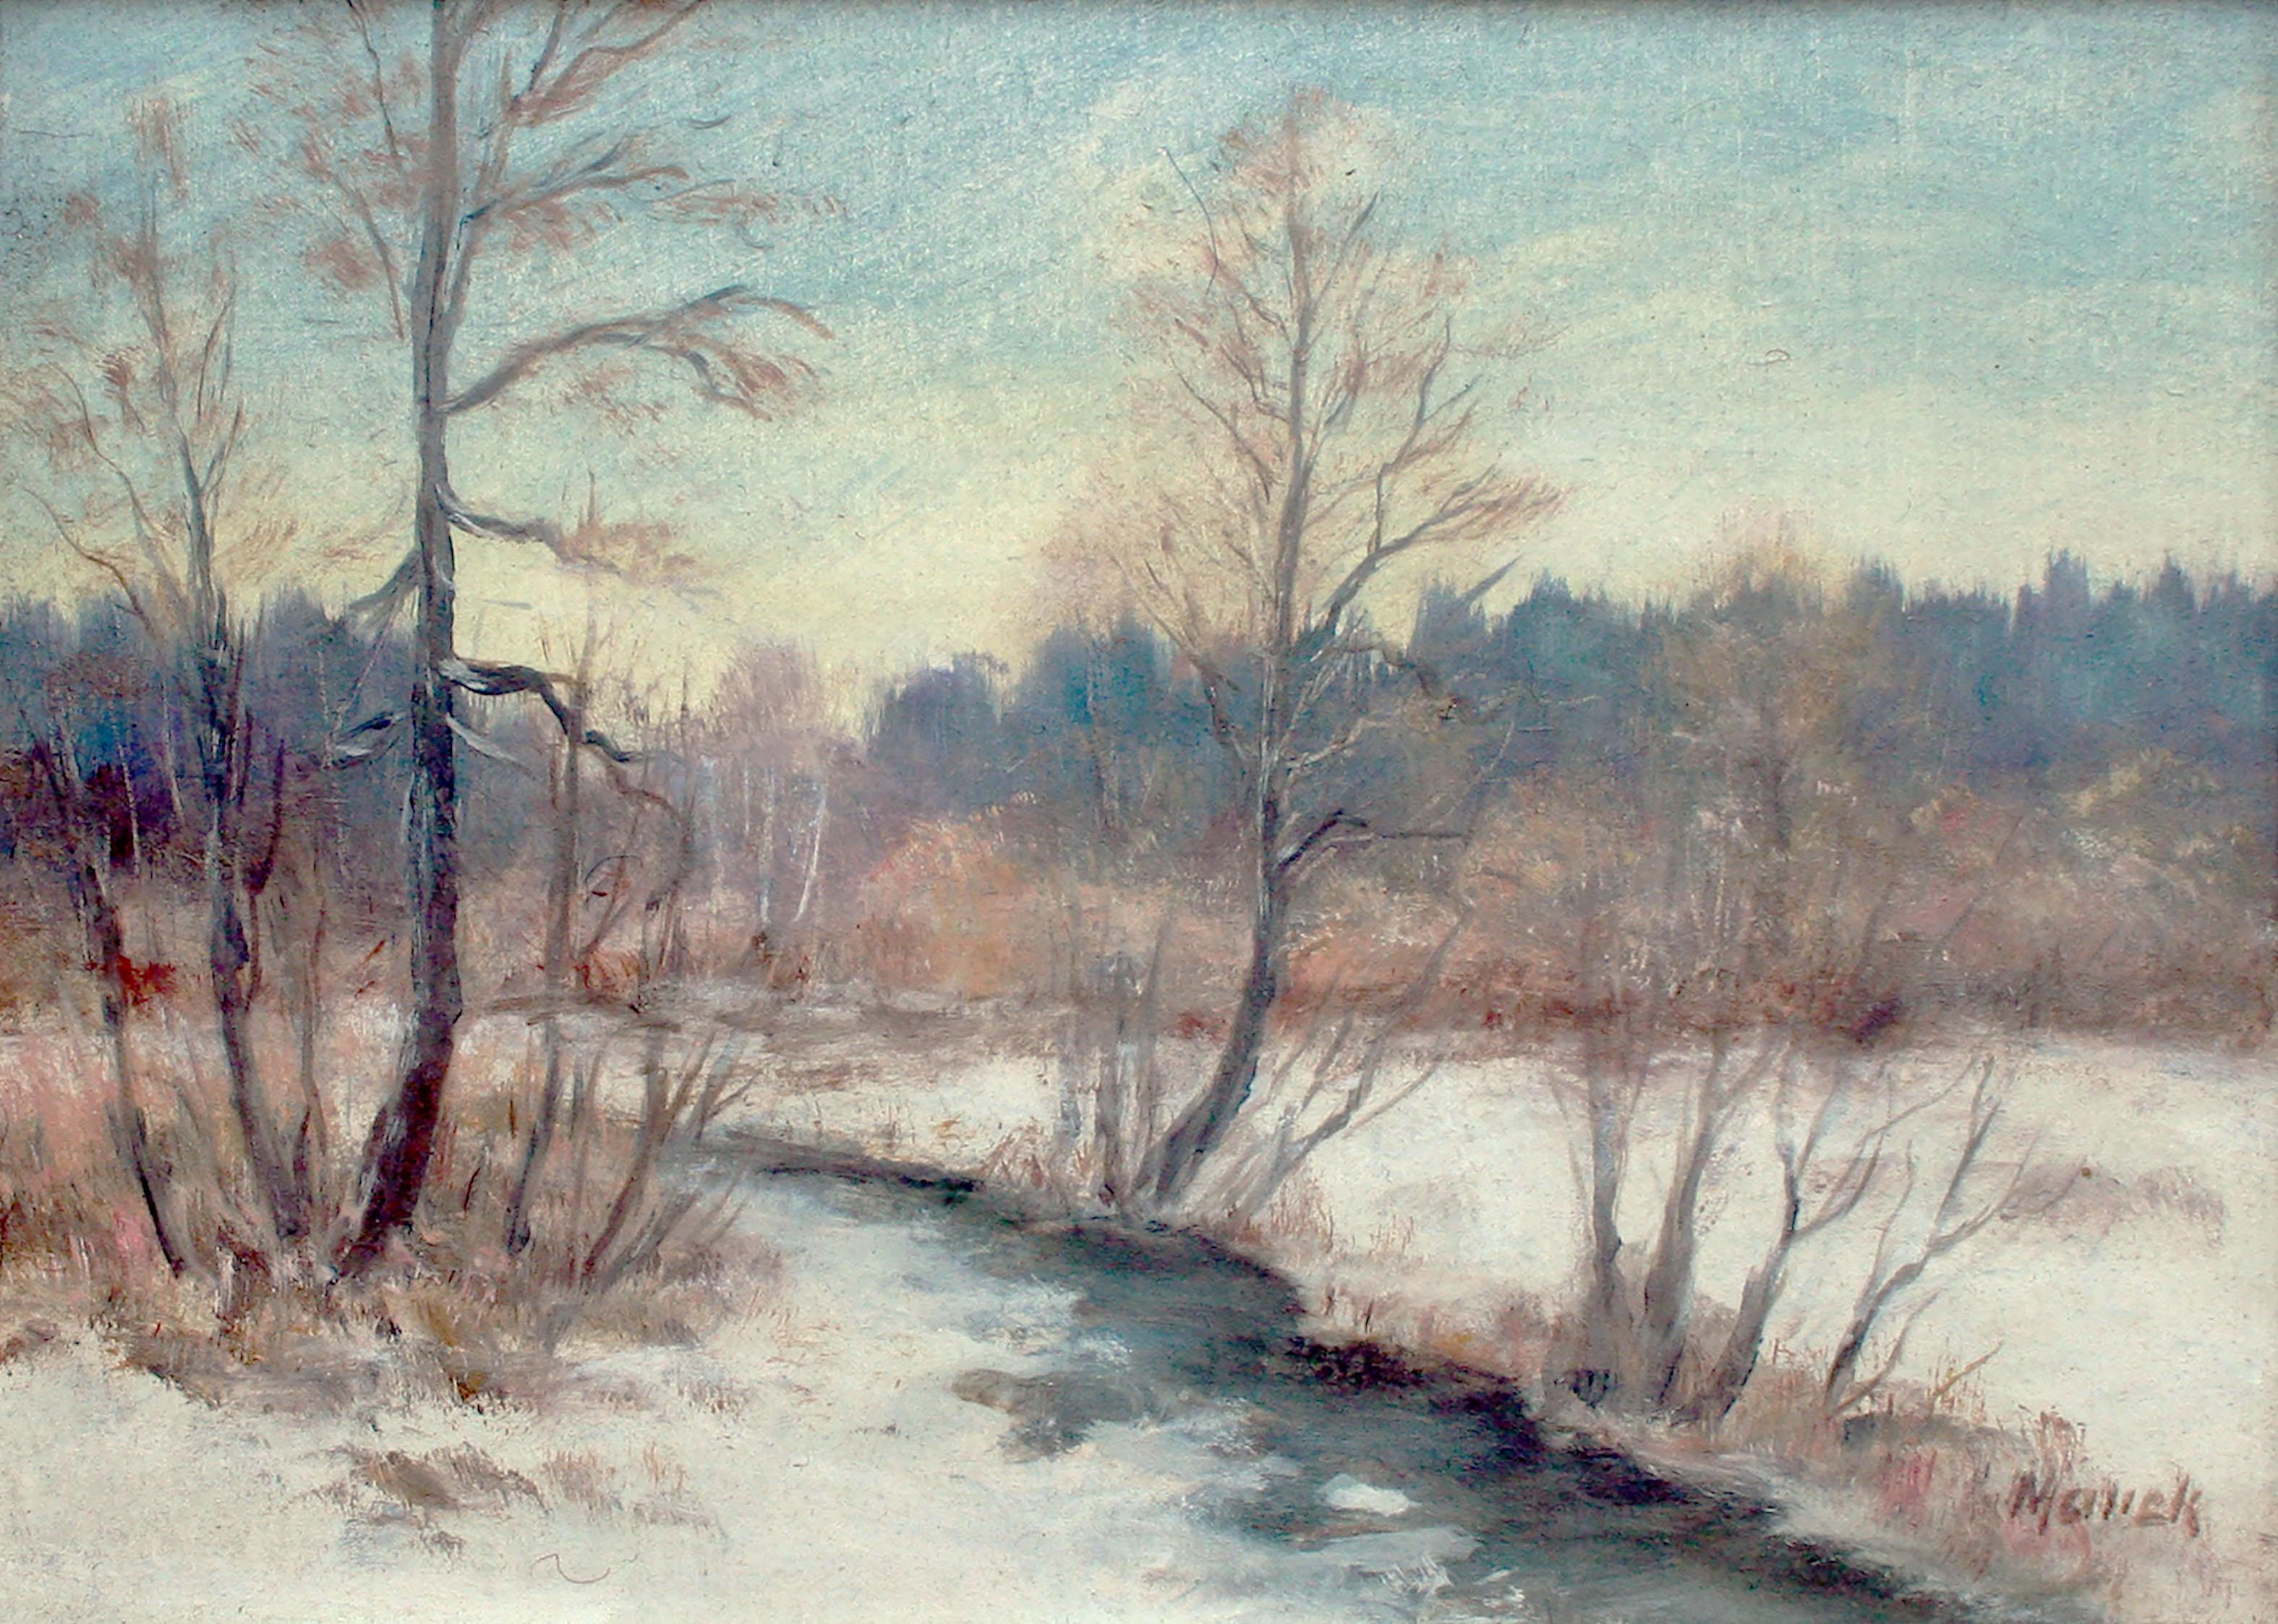 Paysage d'hiver des années 1970 - River in the Snow - Paysage de neige - Painting de Unknown